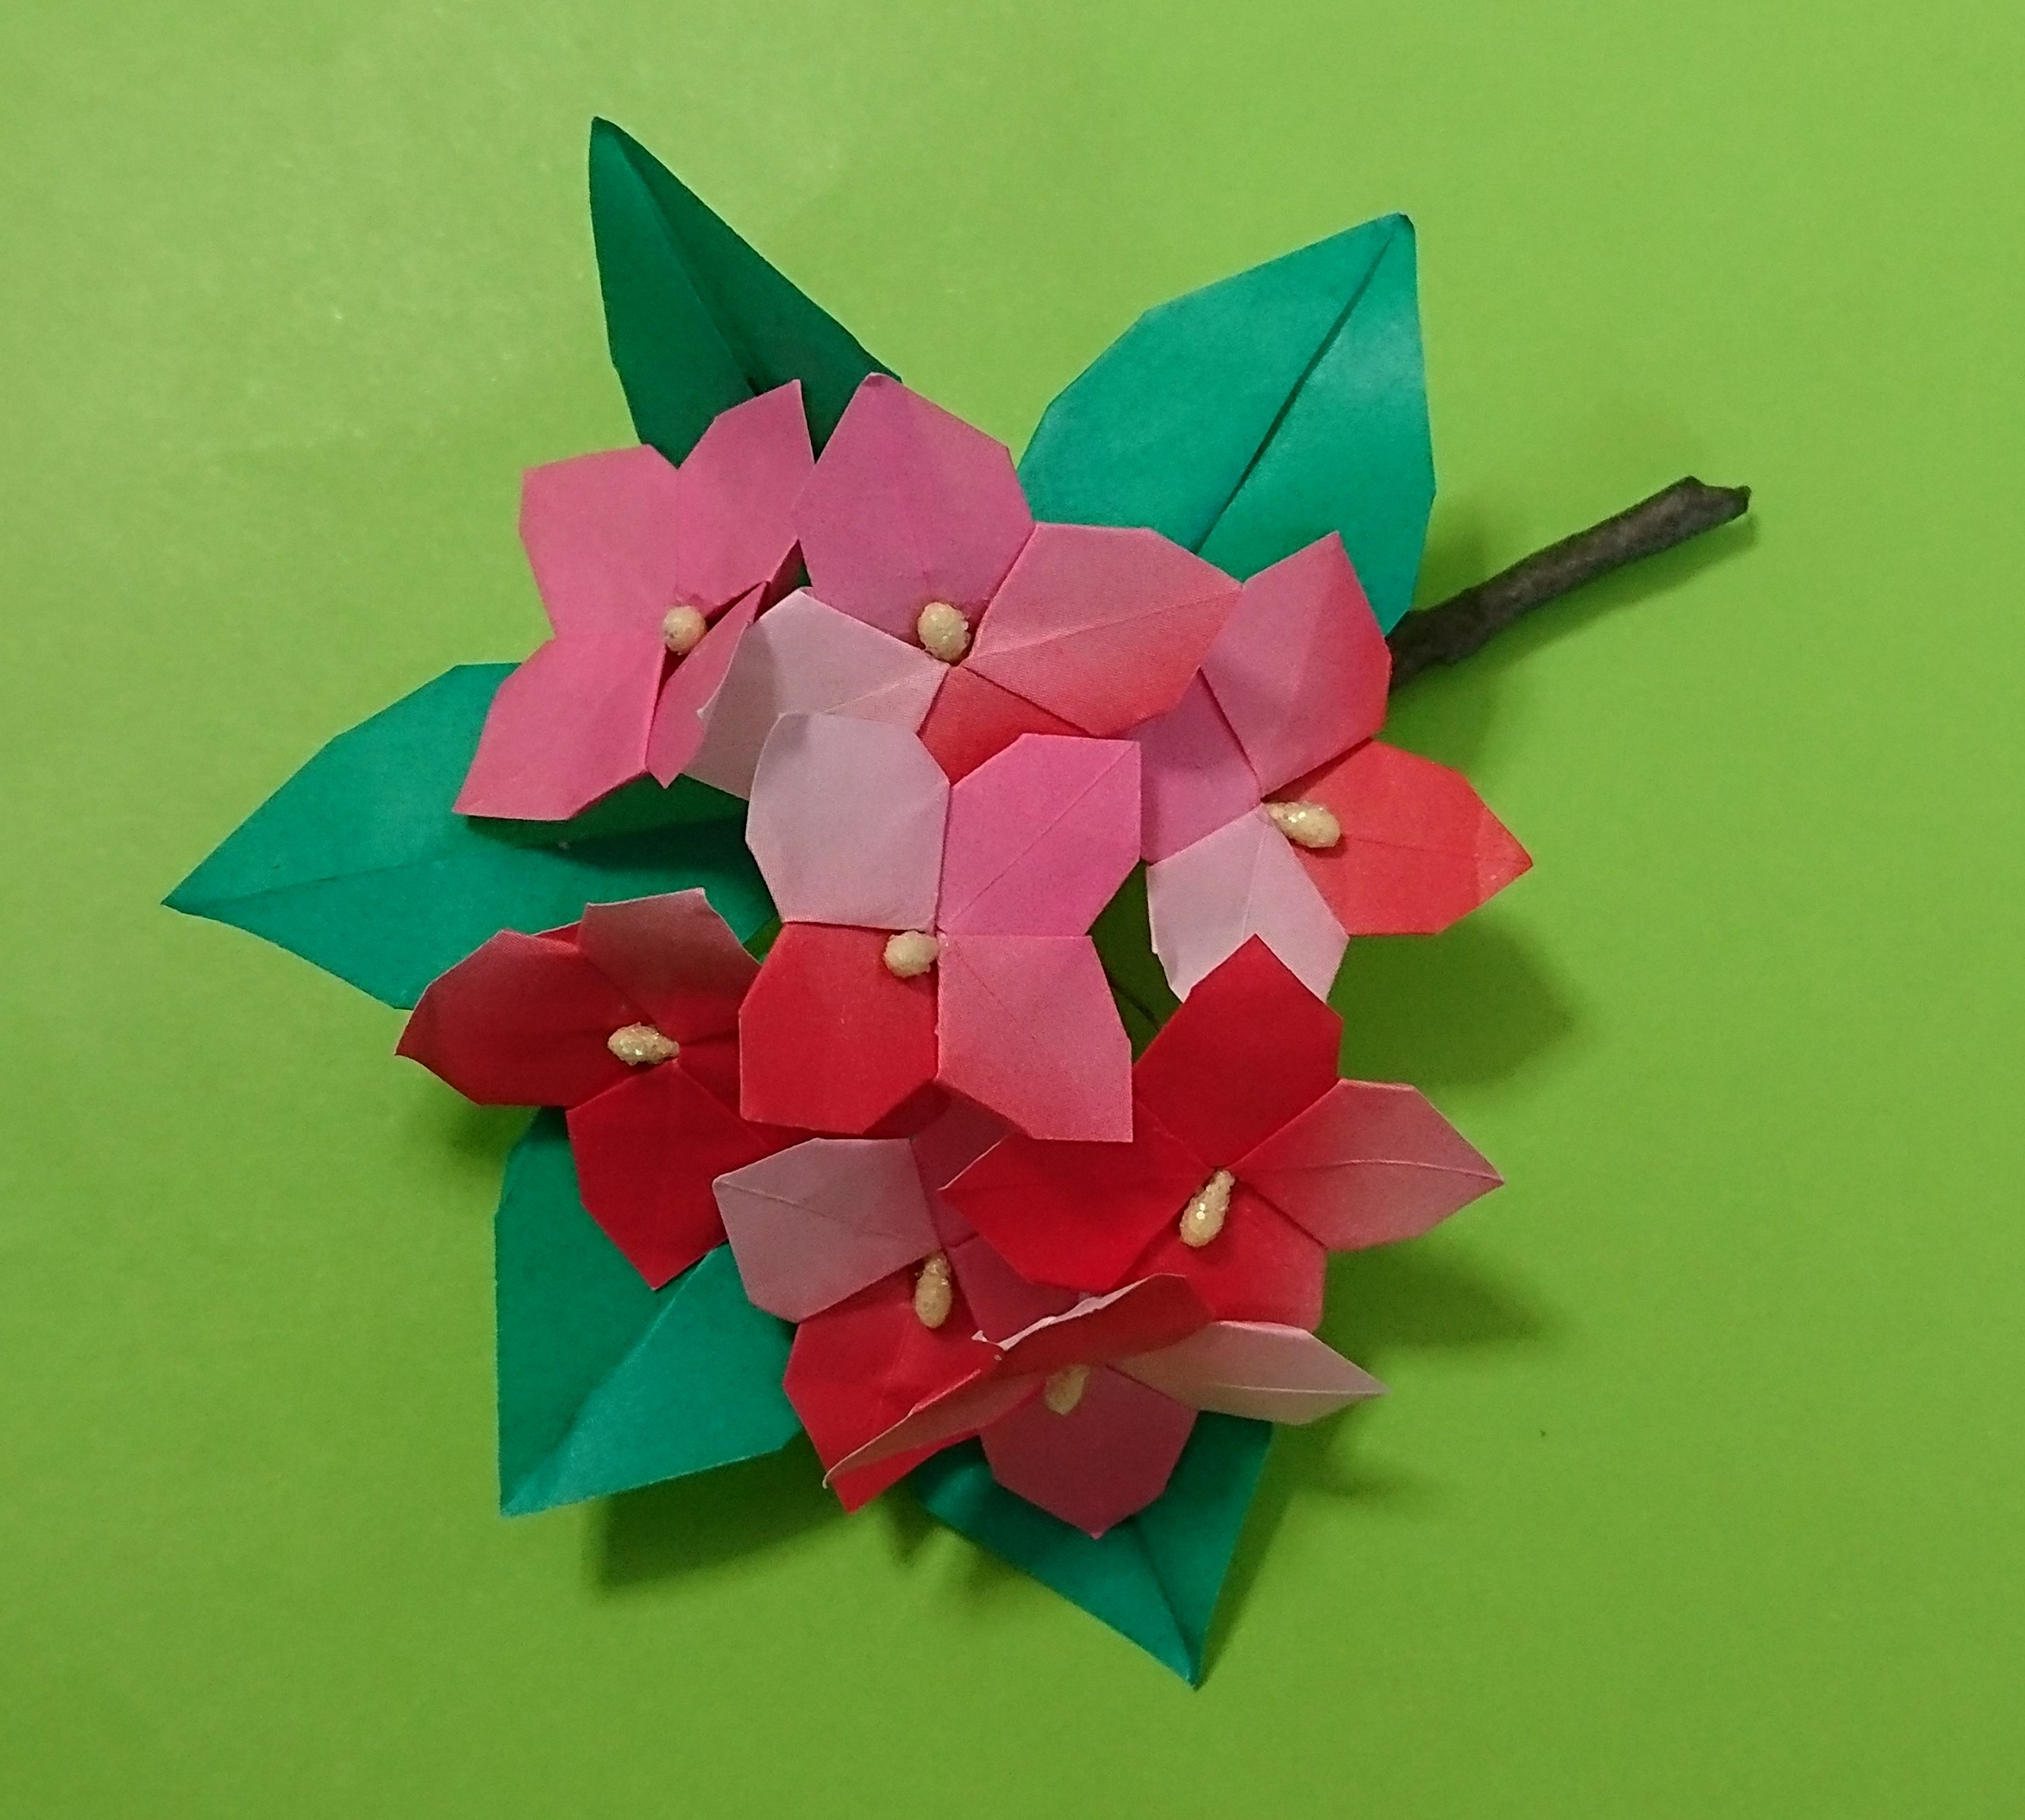 2022/05/24(Tue) 11:58「アジサイのコサージュ」Itsuko Aoyagi
（創作者 Author：山口真,　製作者 Folder：青栁伊都子,　出典 Source：すてきな花の折り紙）
 リボンの色を検討中